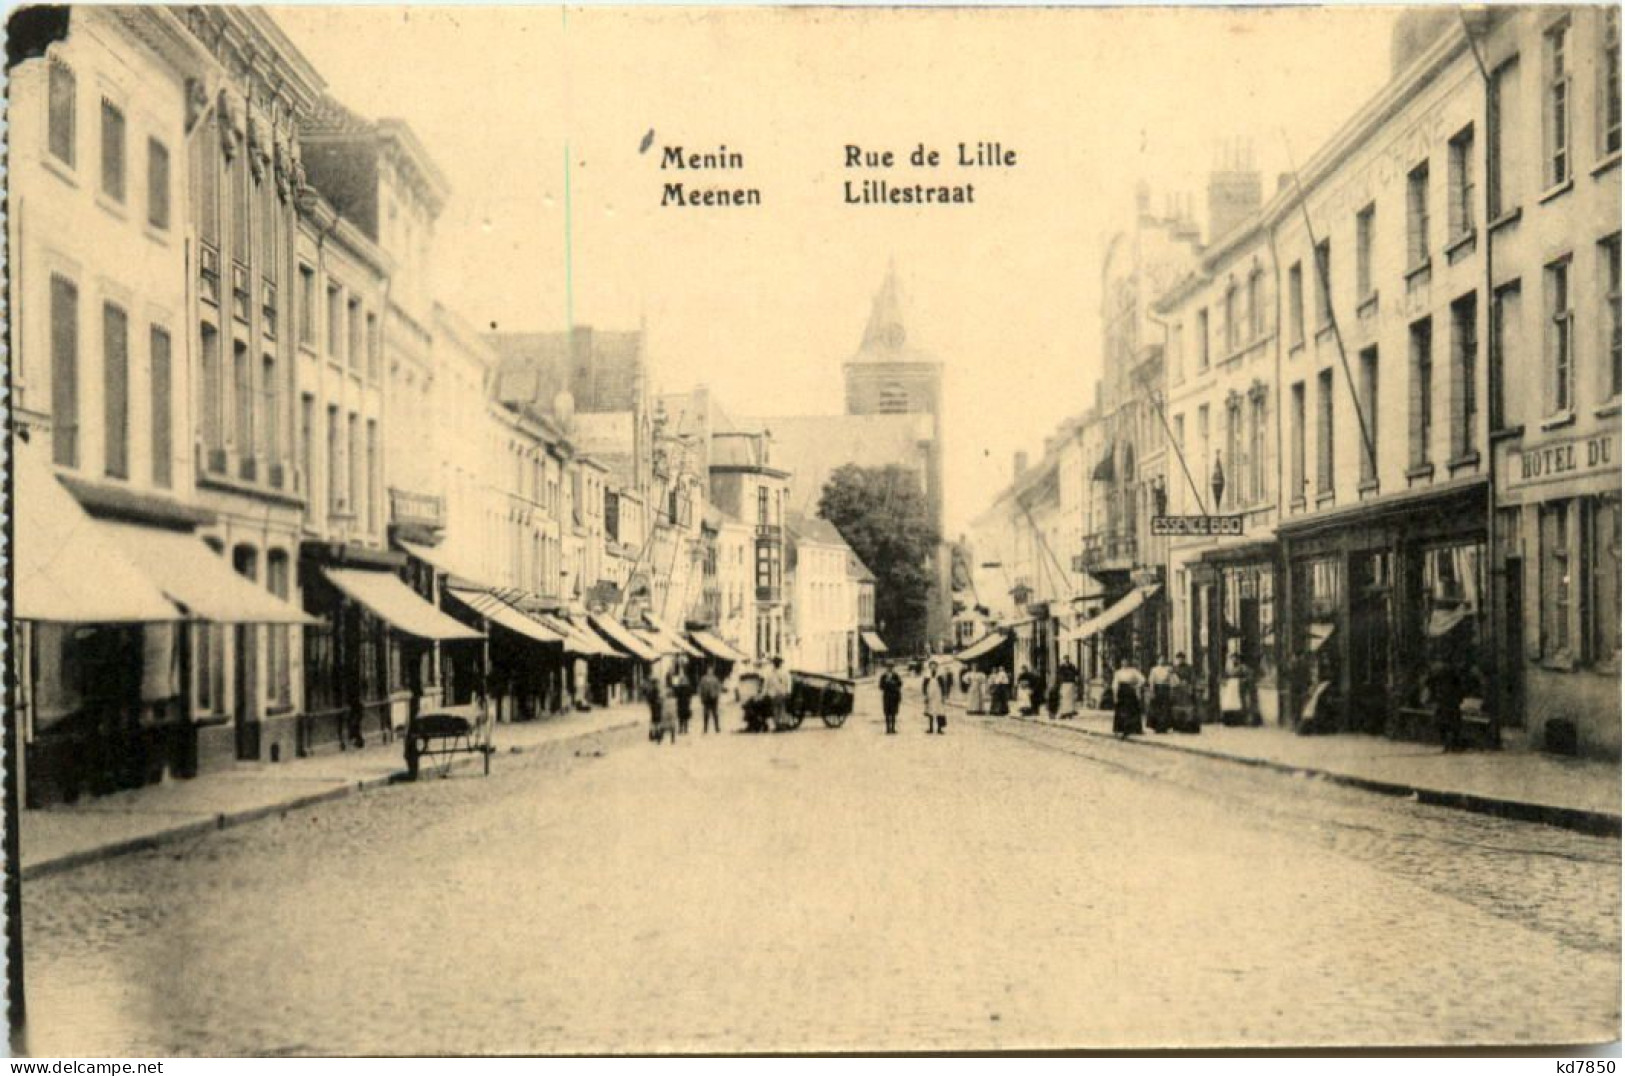 Menin - Meenen - Lillestraat - Menen